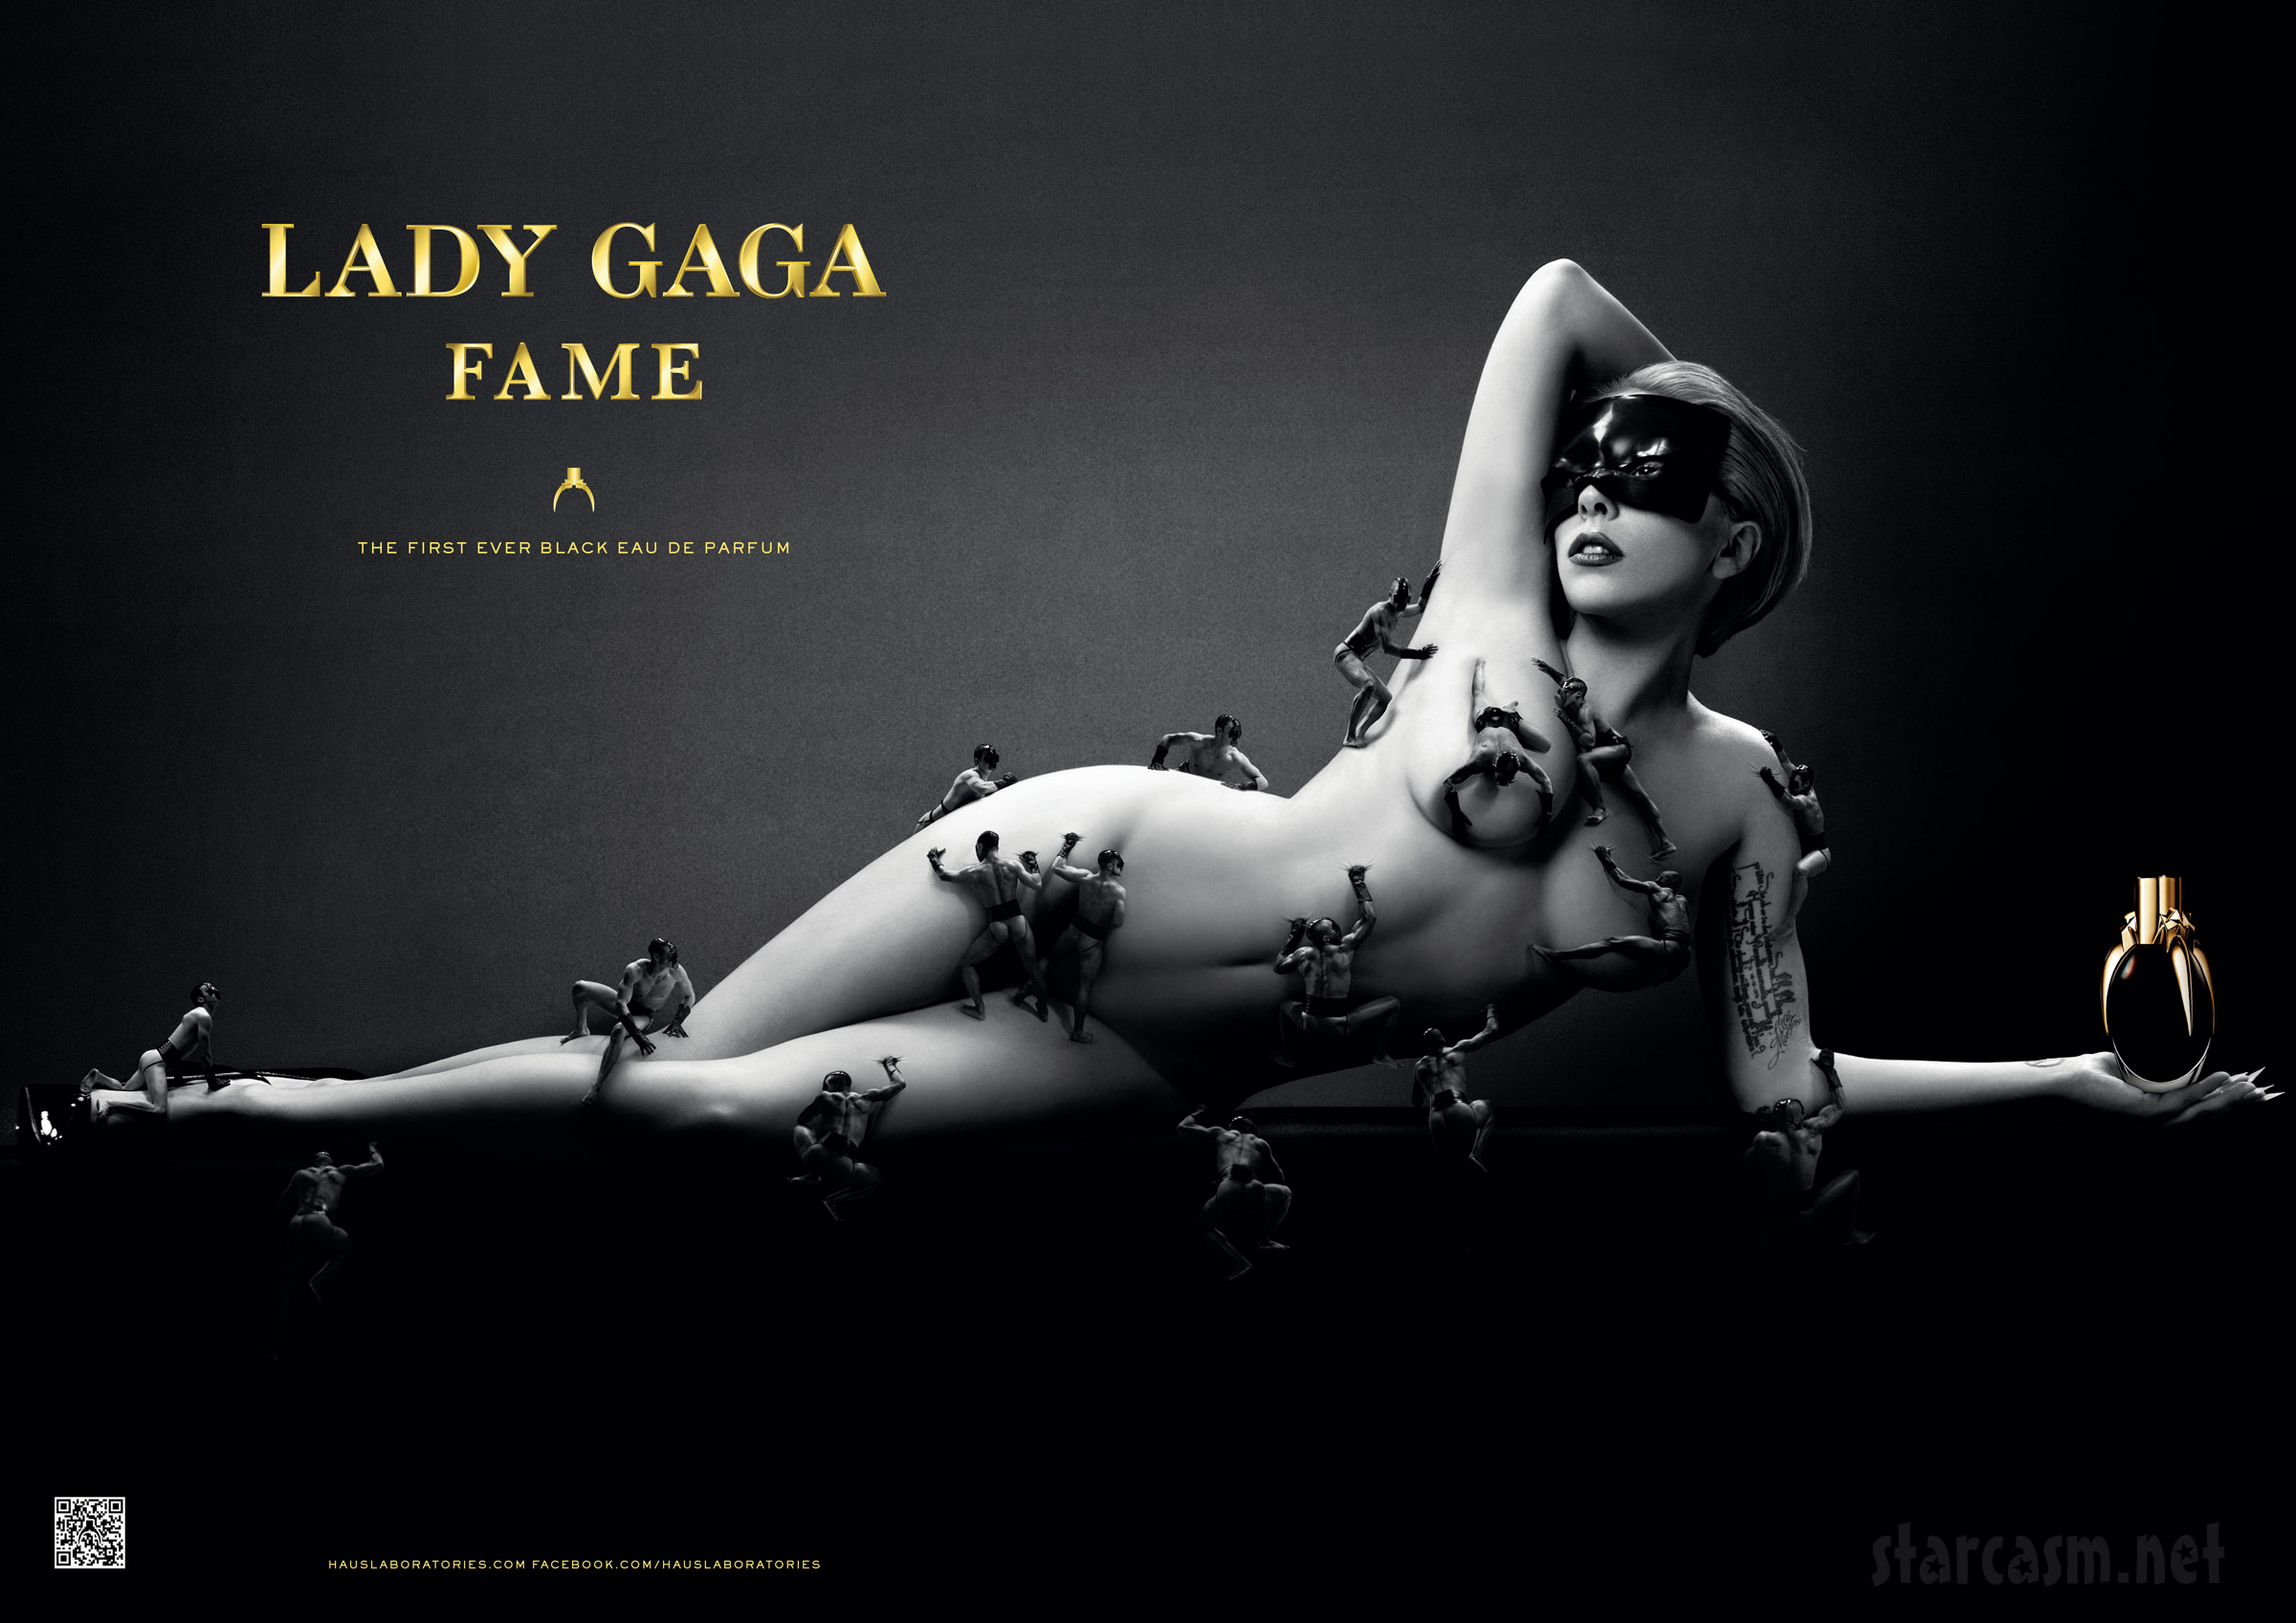 Steven Klein dirige el anuncio de Fame de Lady Gaga, el primer perfume negro